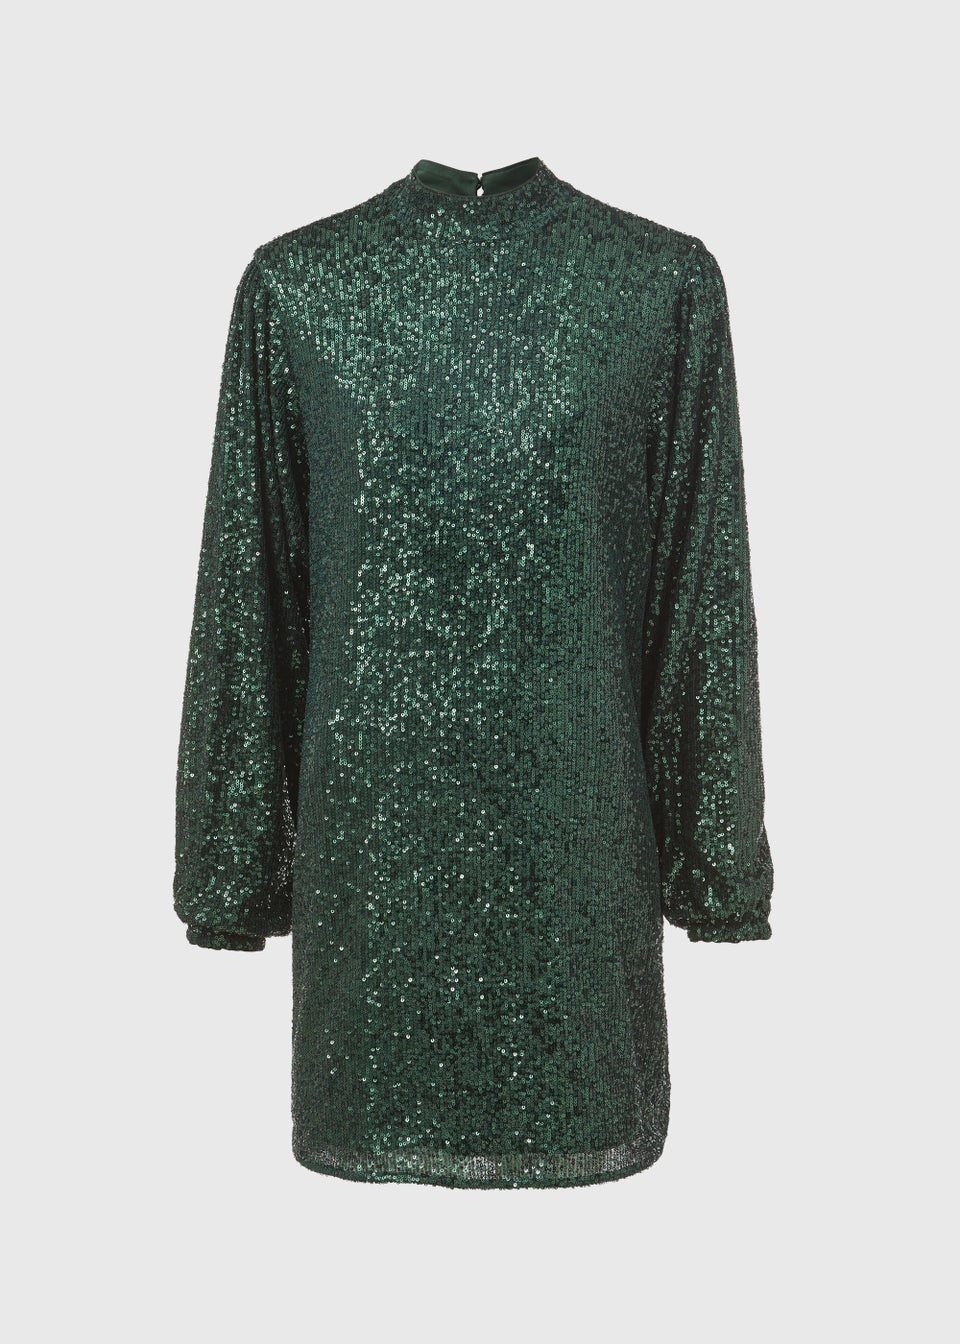 Et Vous Green Sequin Dress - Matalan